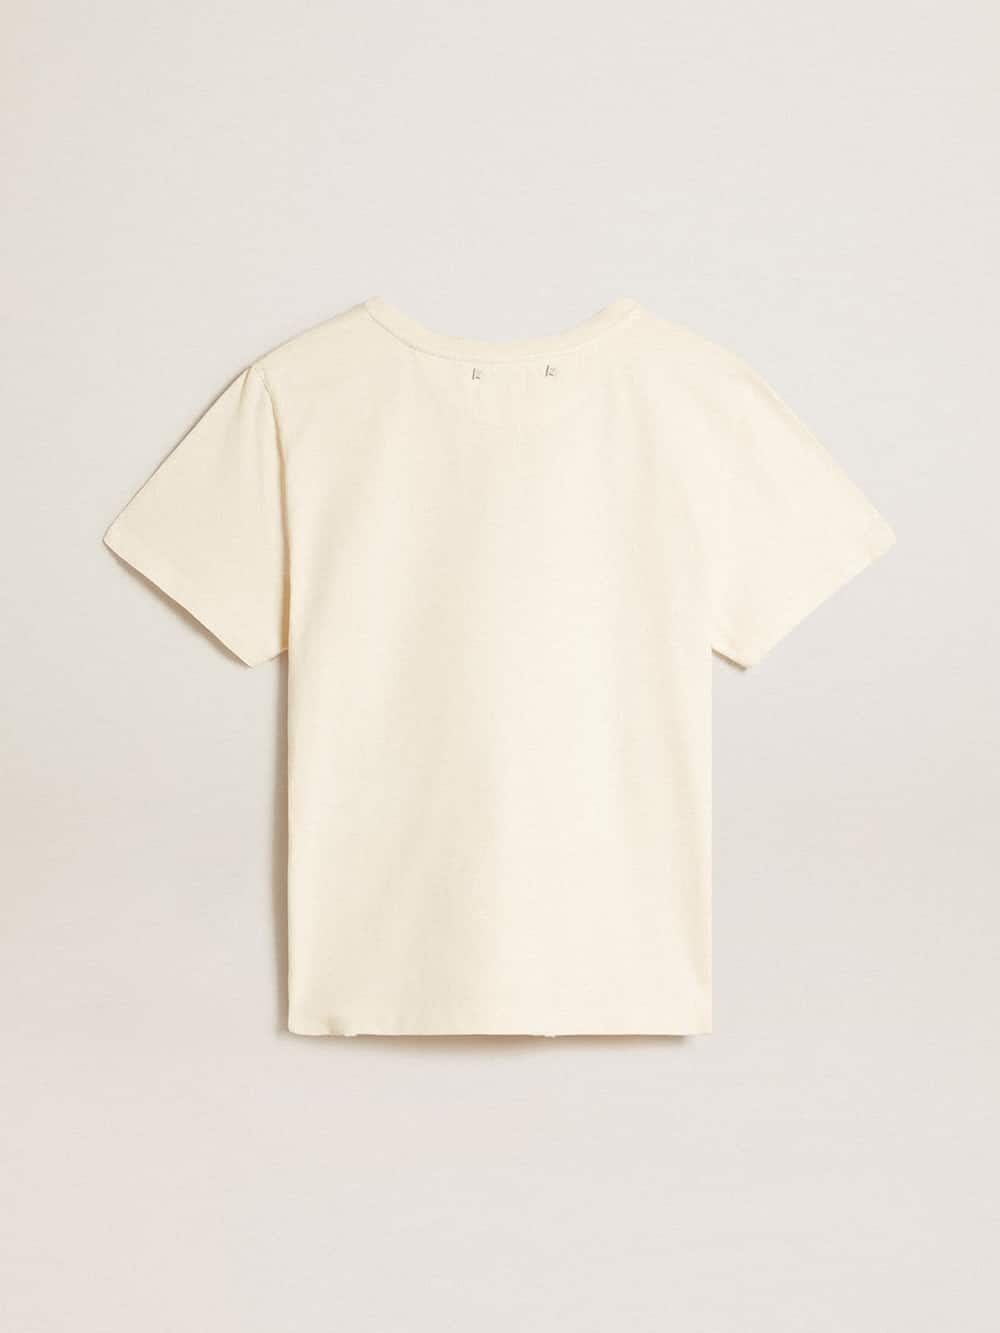 Golden Goose - T-shirt in cotone color bianco vissuto con stampa sul davanti in 